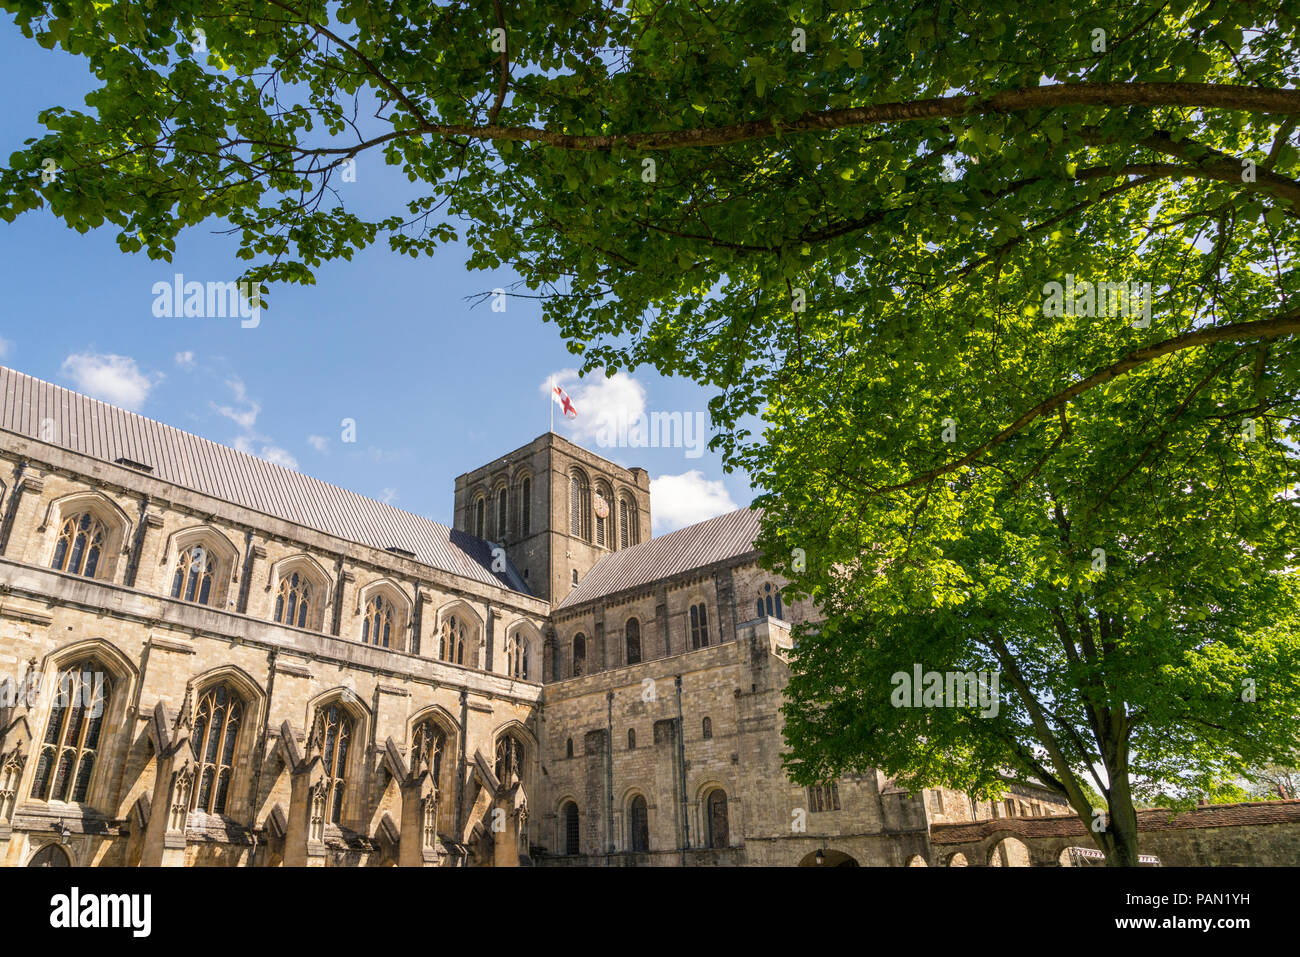 La Cattedrale di Winchester dal di dentro i giardini cercando attraverso un albero canopy presso il St Georges Cross bandiera di Inghilterra Foto Stock